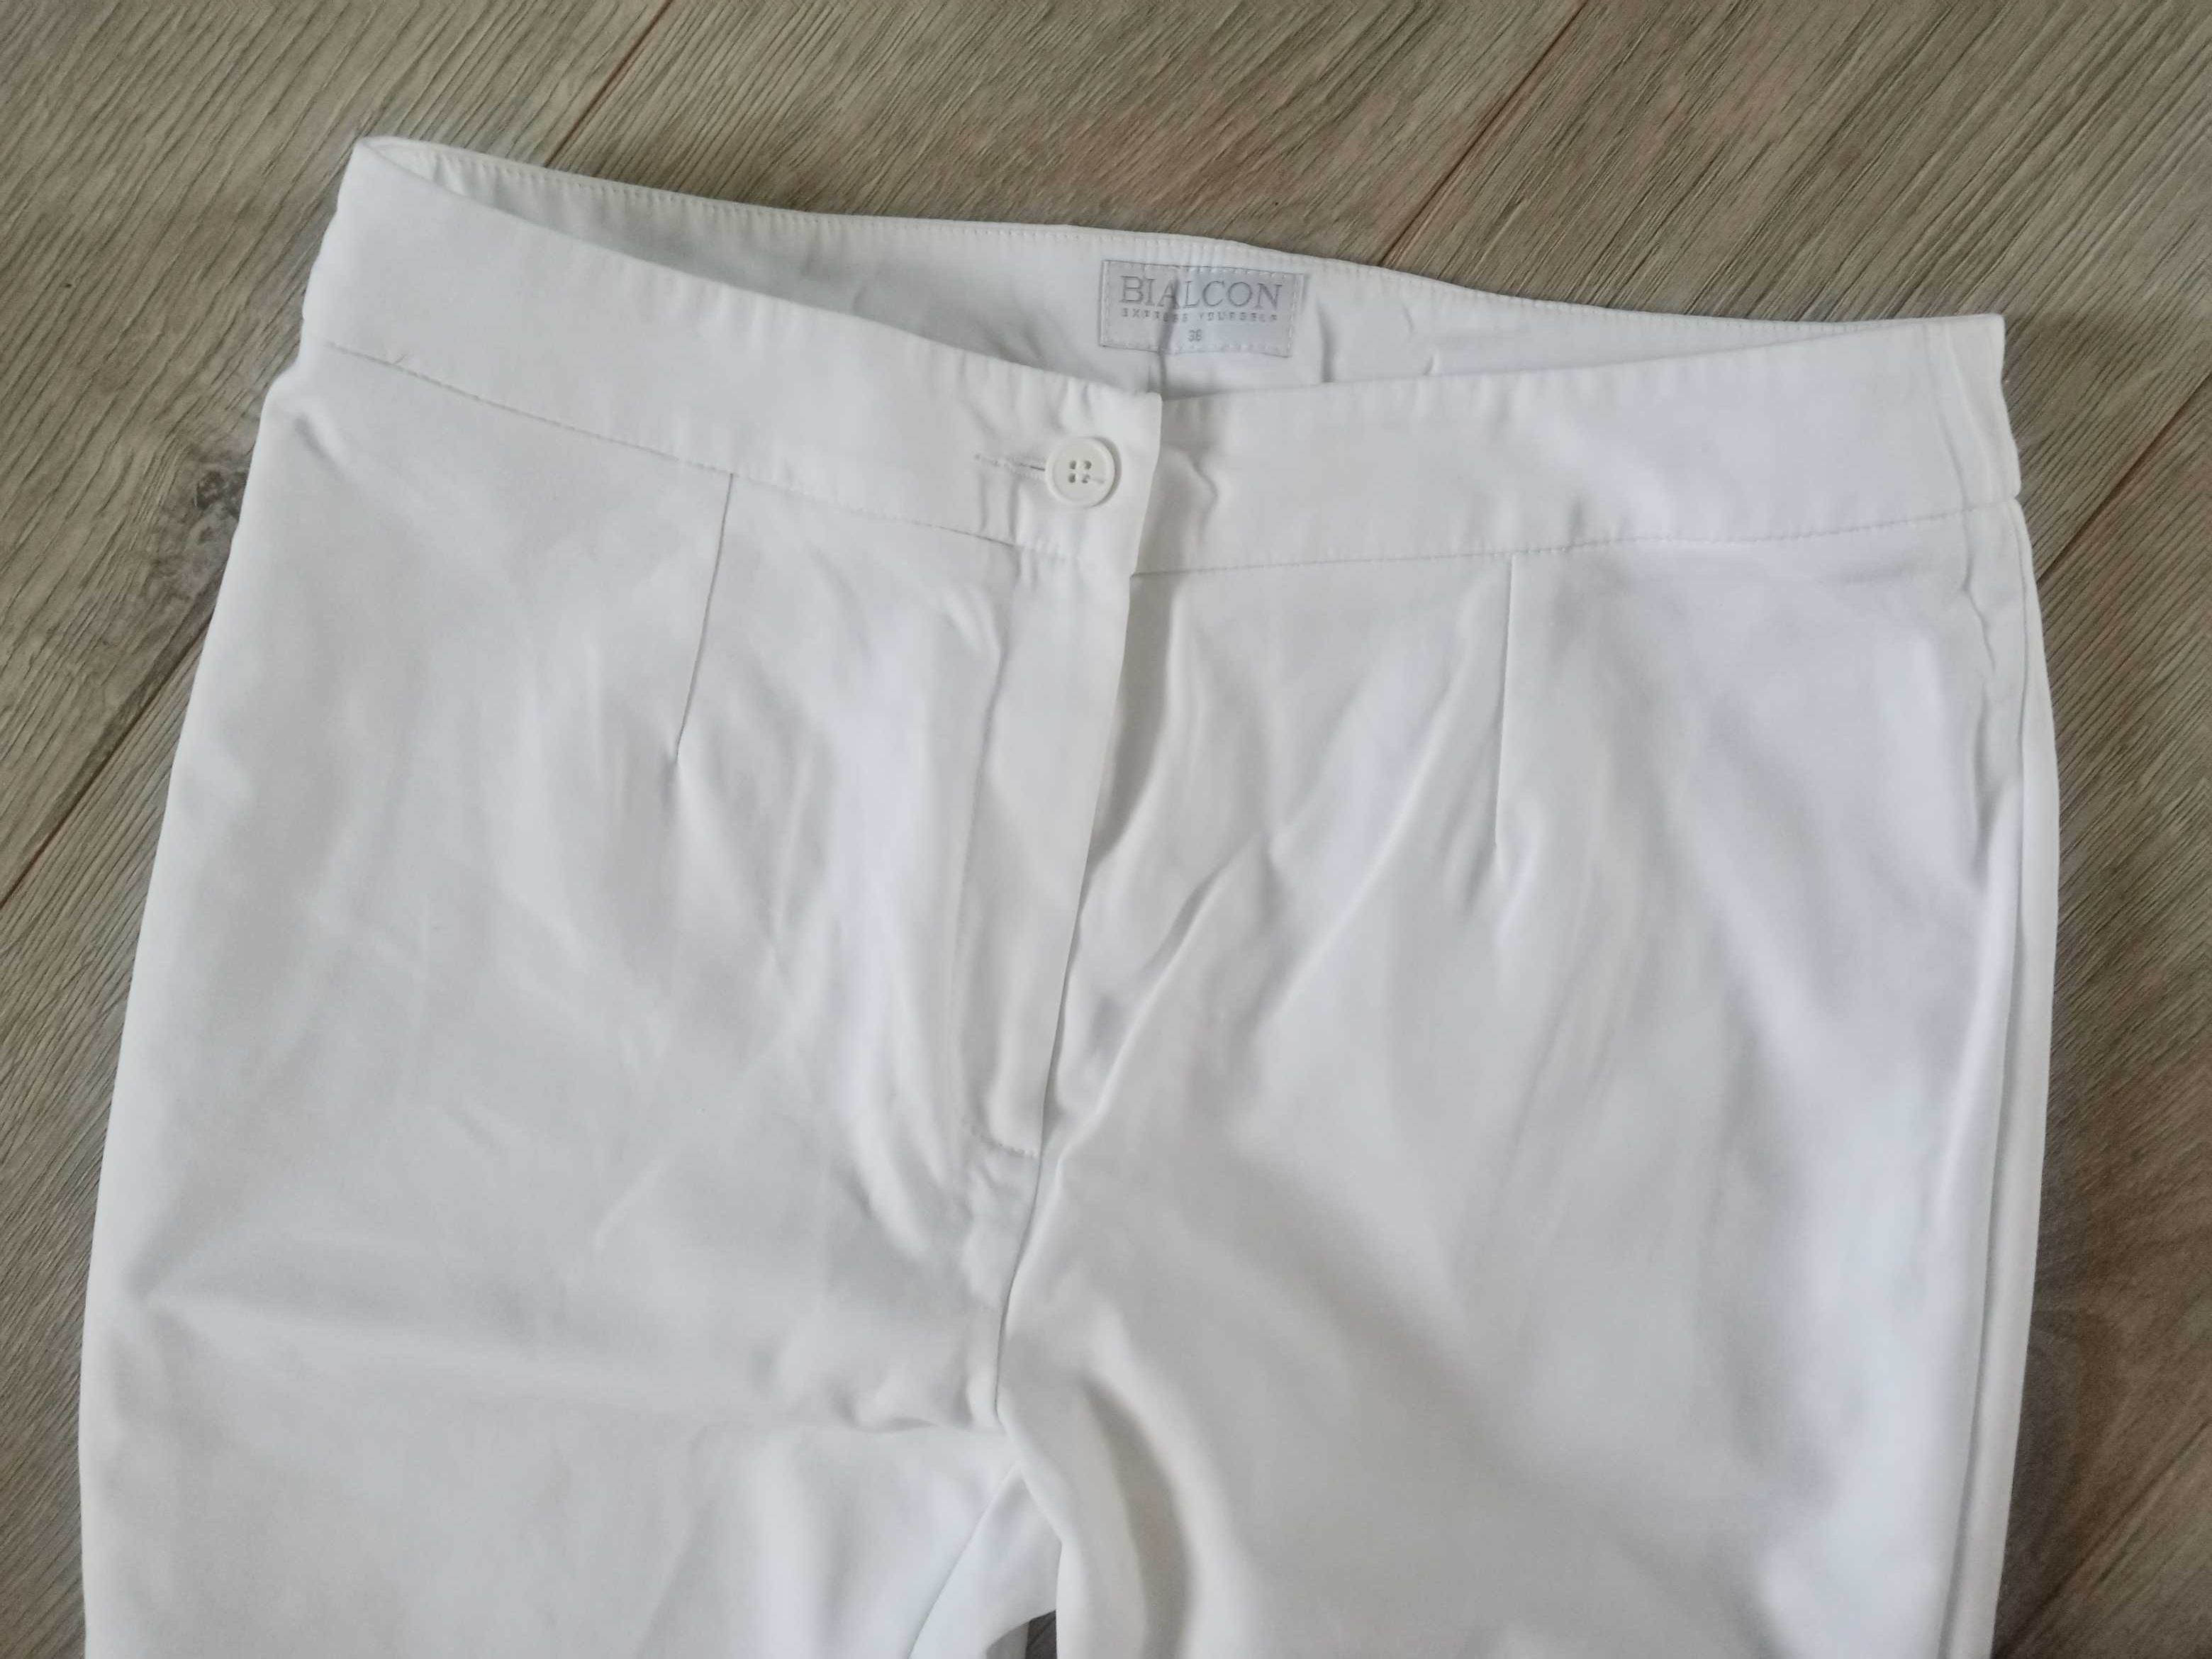 Białe letnie spodnie BIALCON r. 36